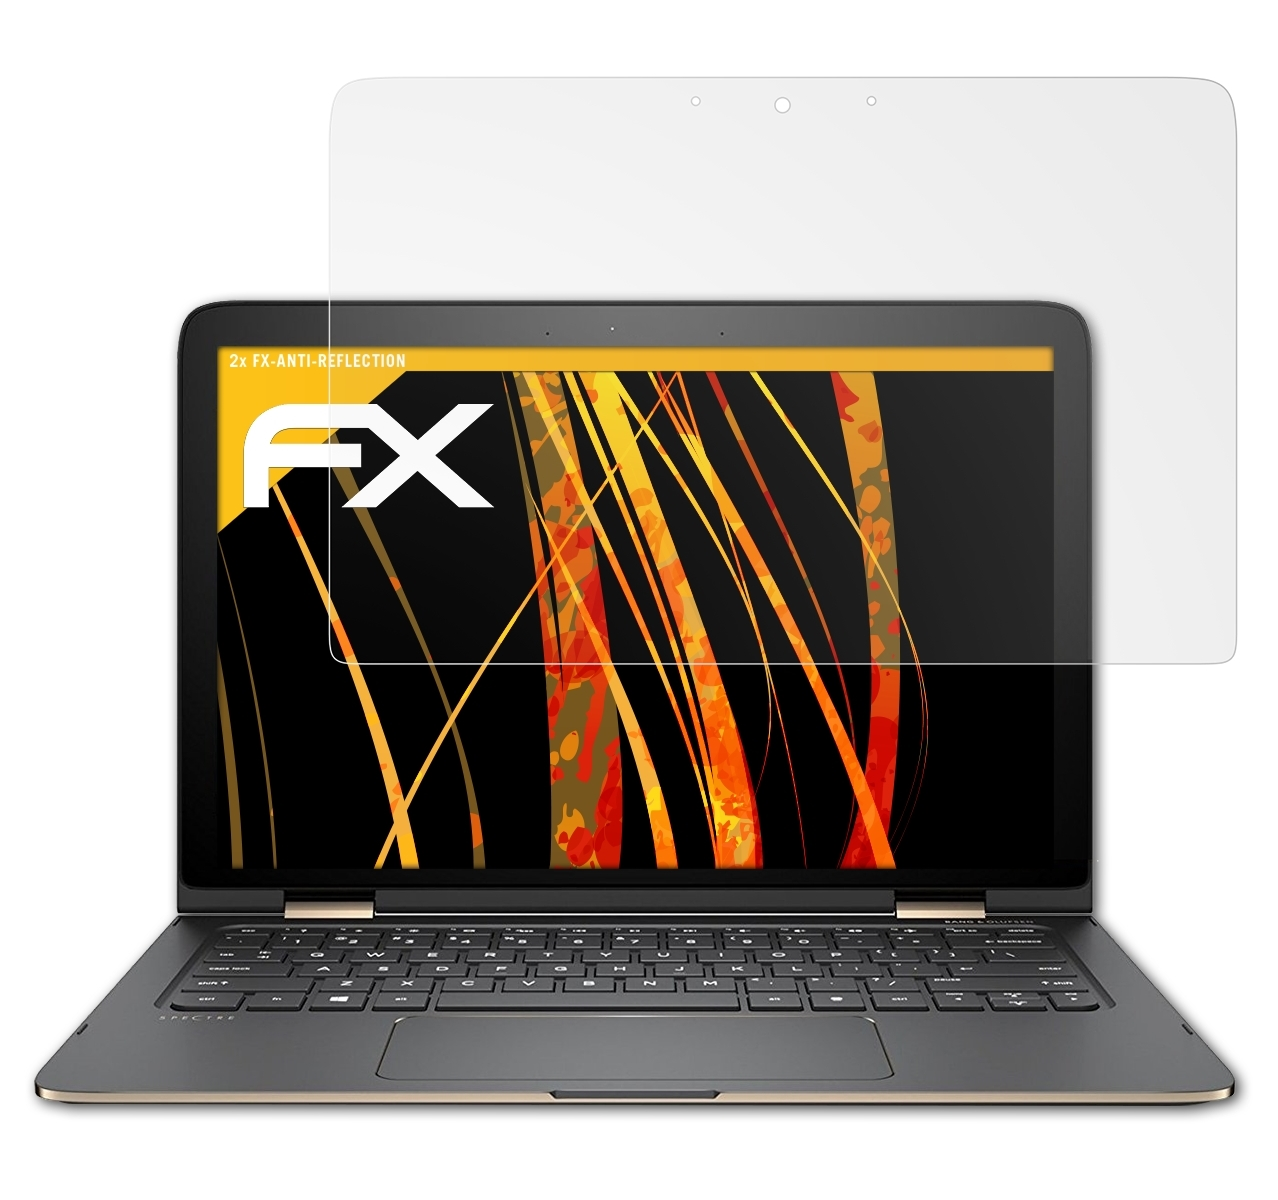 ATFOLIX 2x FX-Antireflex Displayschutz(für HP x360 Spectre 13-4230ng)